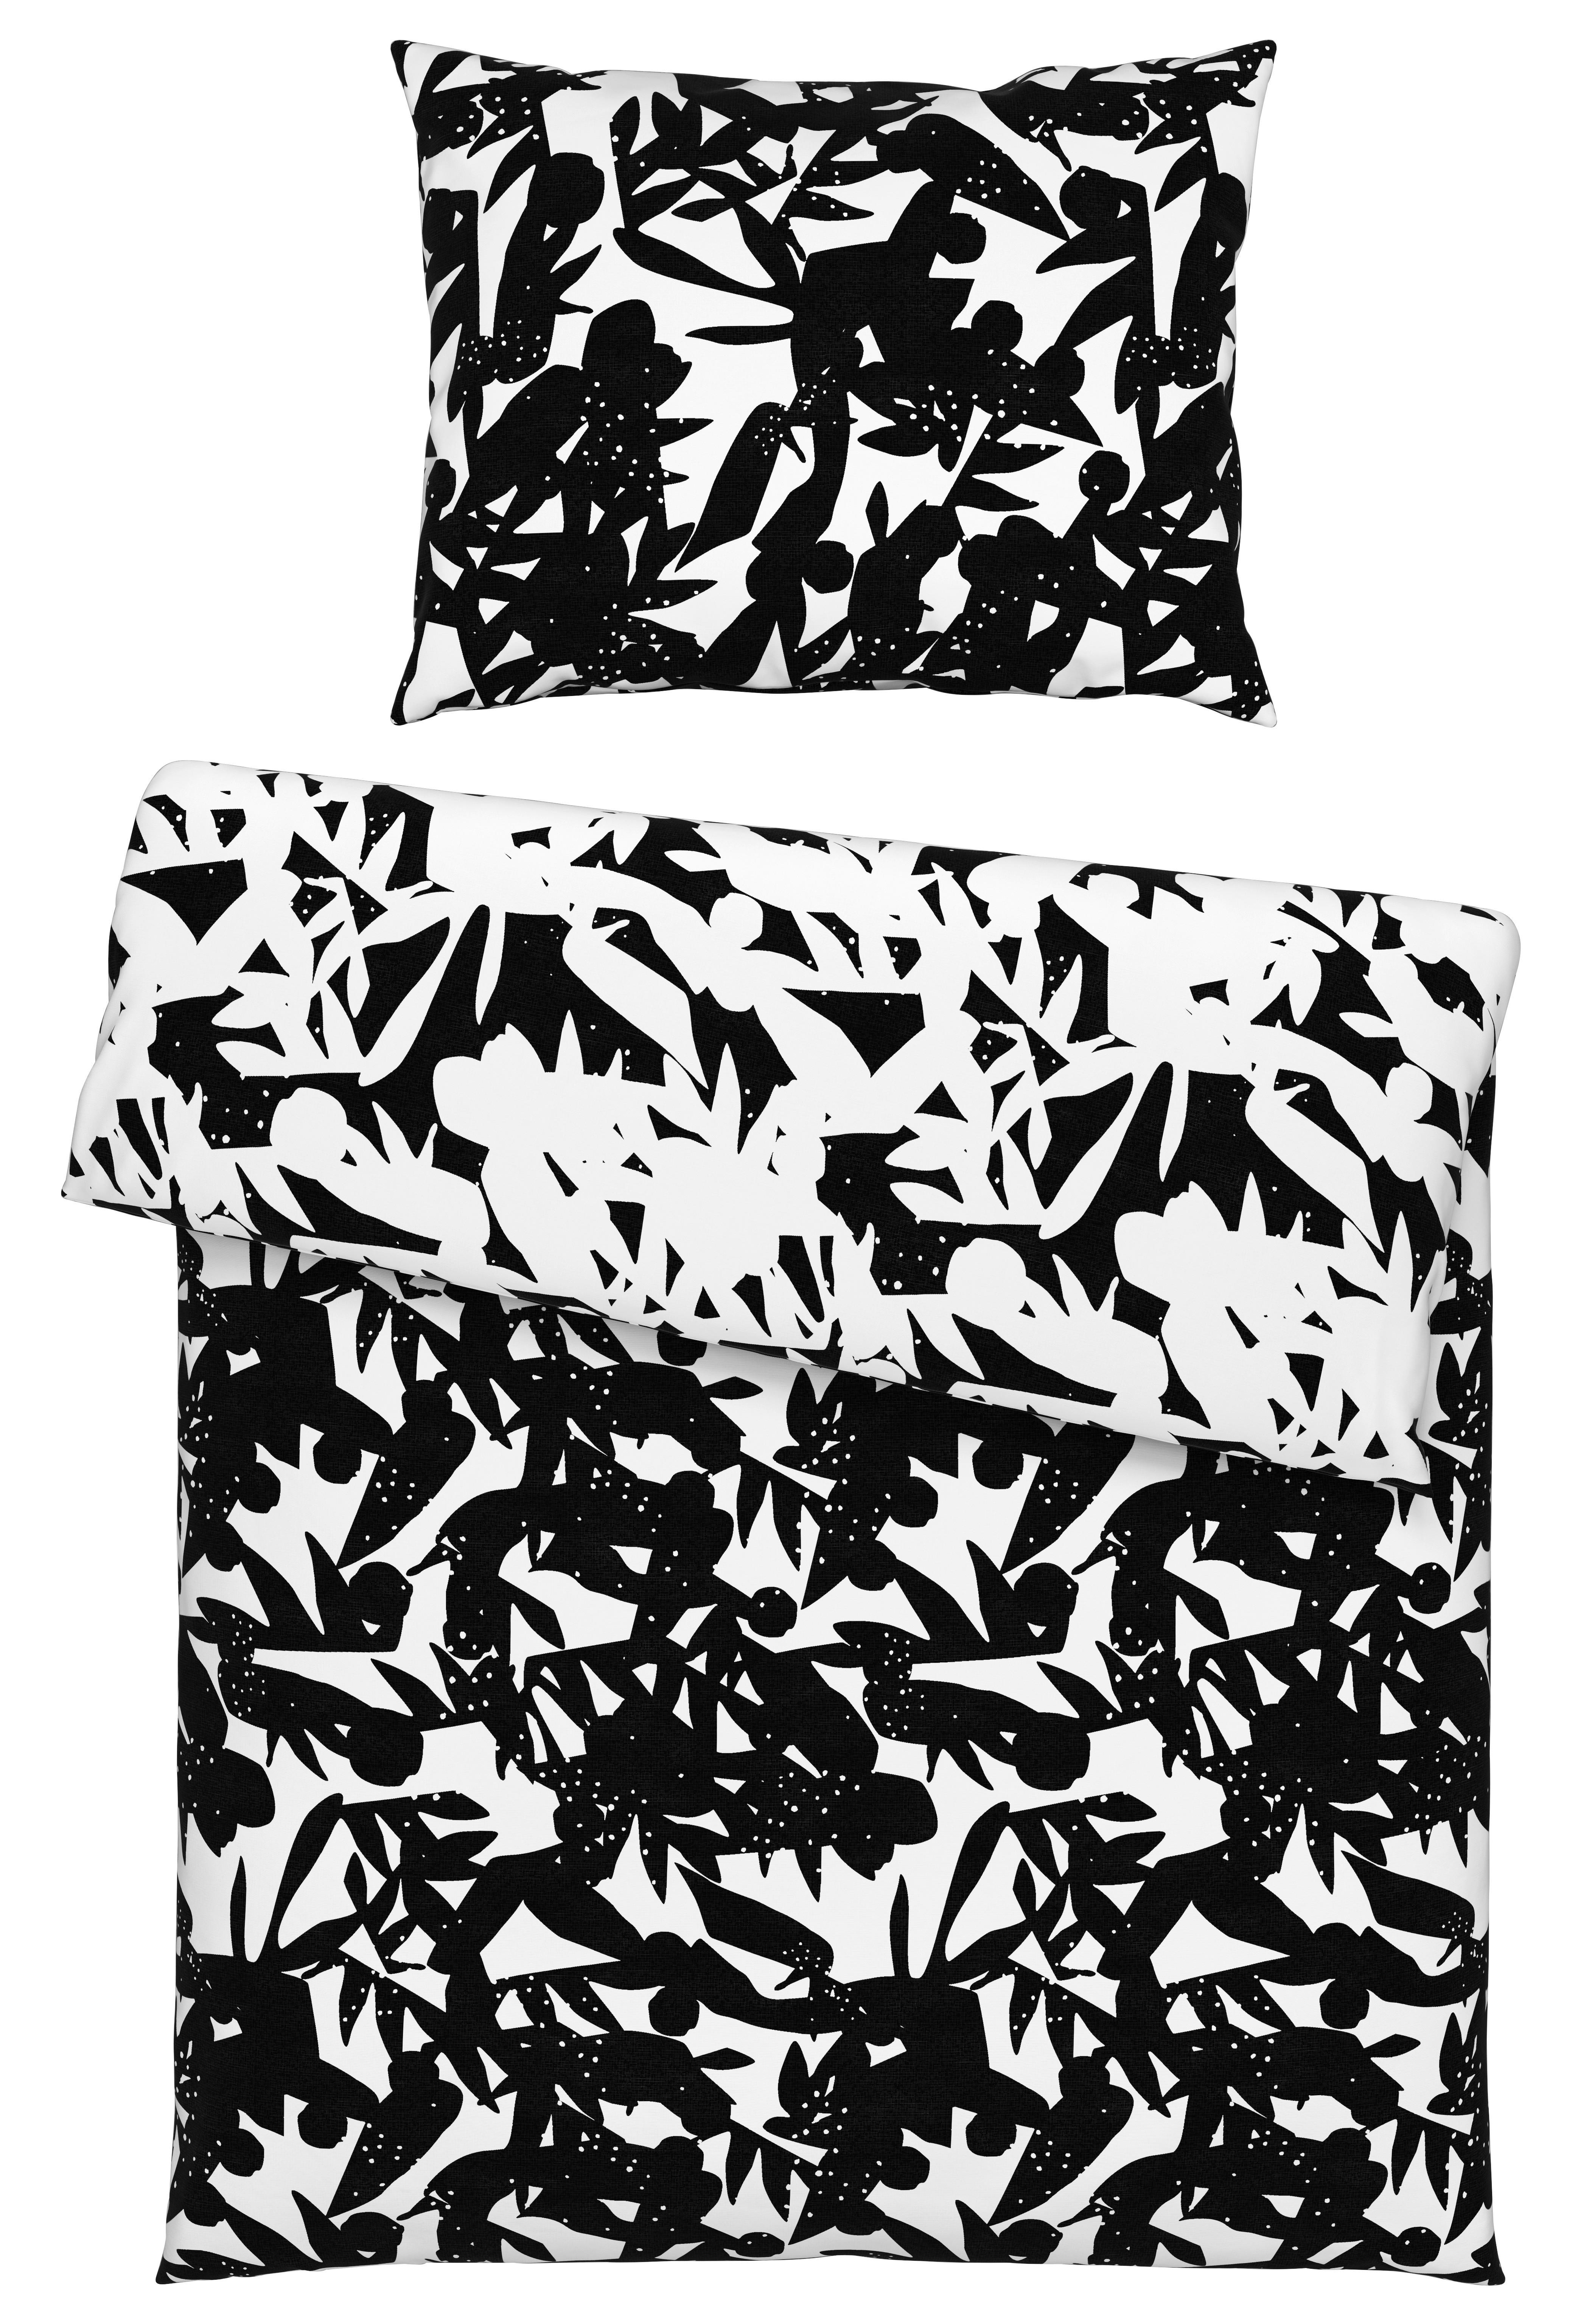 Obojstranná Posteľná Bielizeň Abstract Wende, 140/200cm - čierna/biela, Konvenčný, textil (140/200cm) - Modern Living